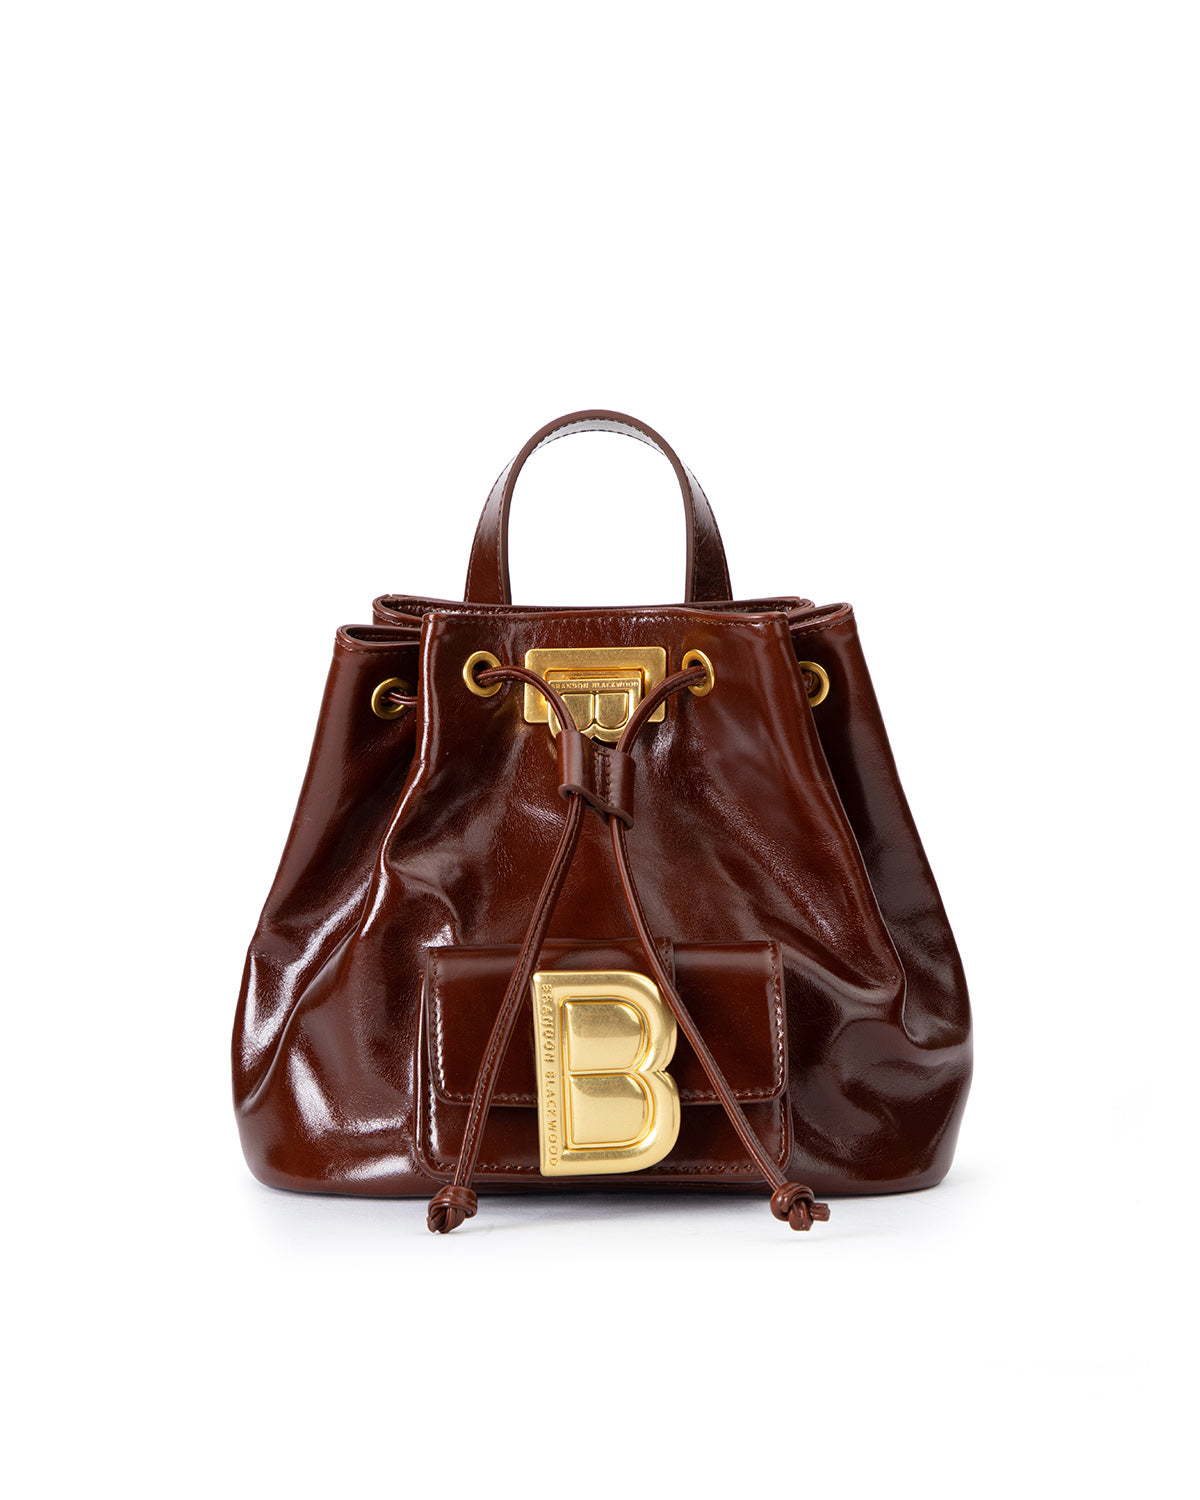 Brandon Blackwood New York - Midori Bag - Brown Oil Leather